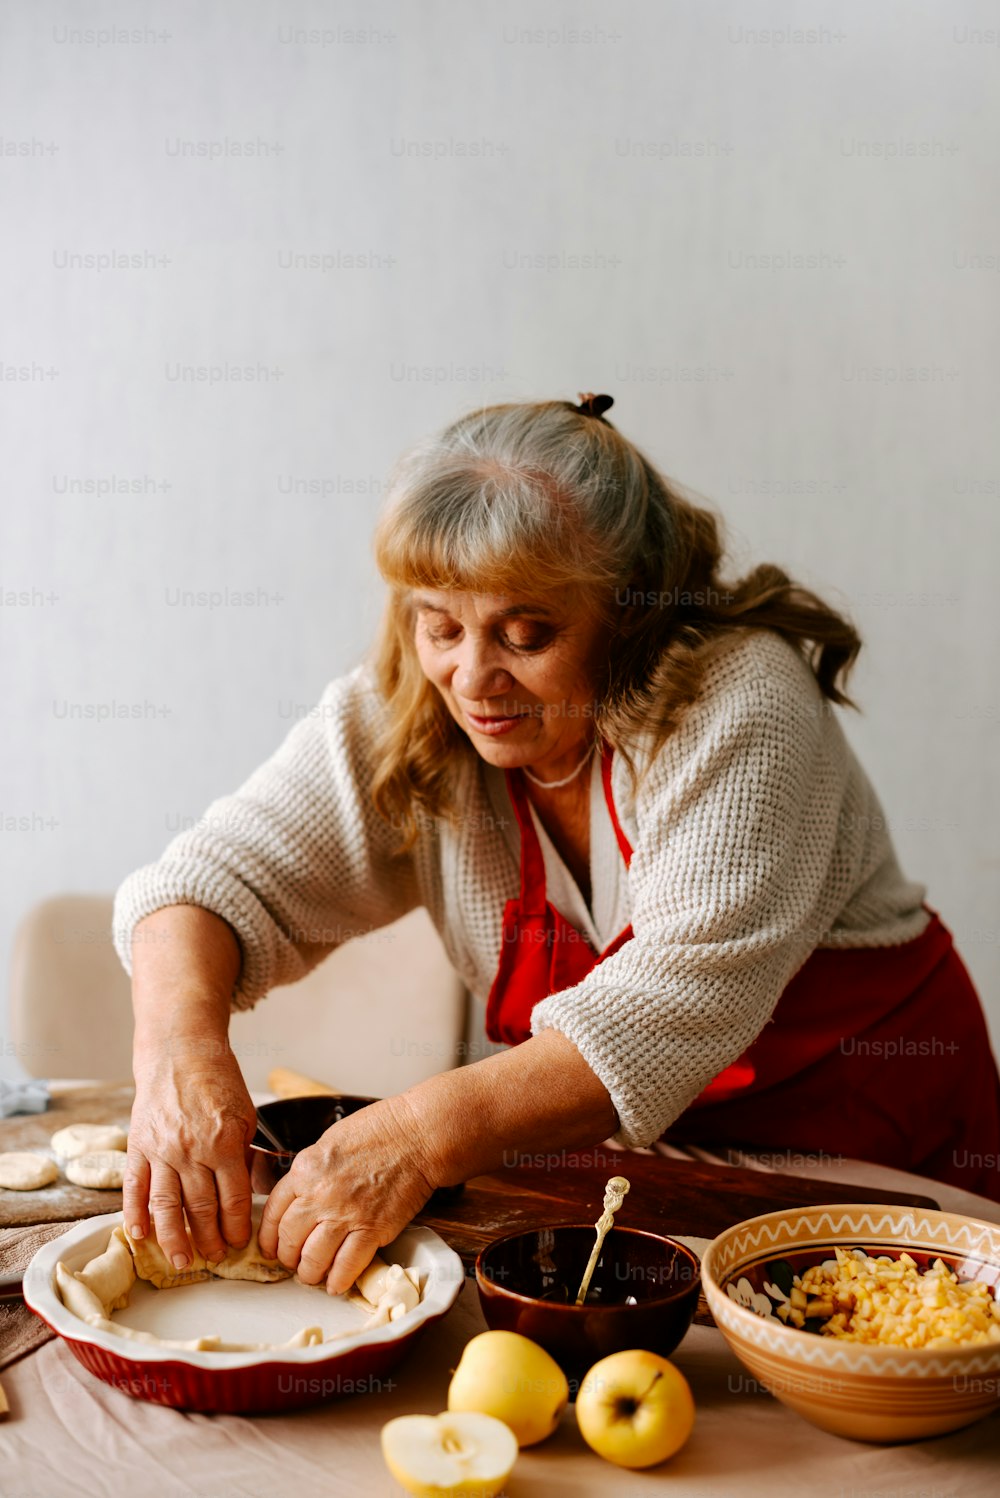 Eine Frau in einer Schürze bereitet Essen auf einem Tisch zu